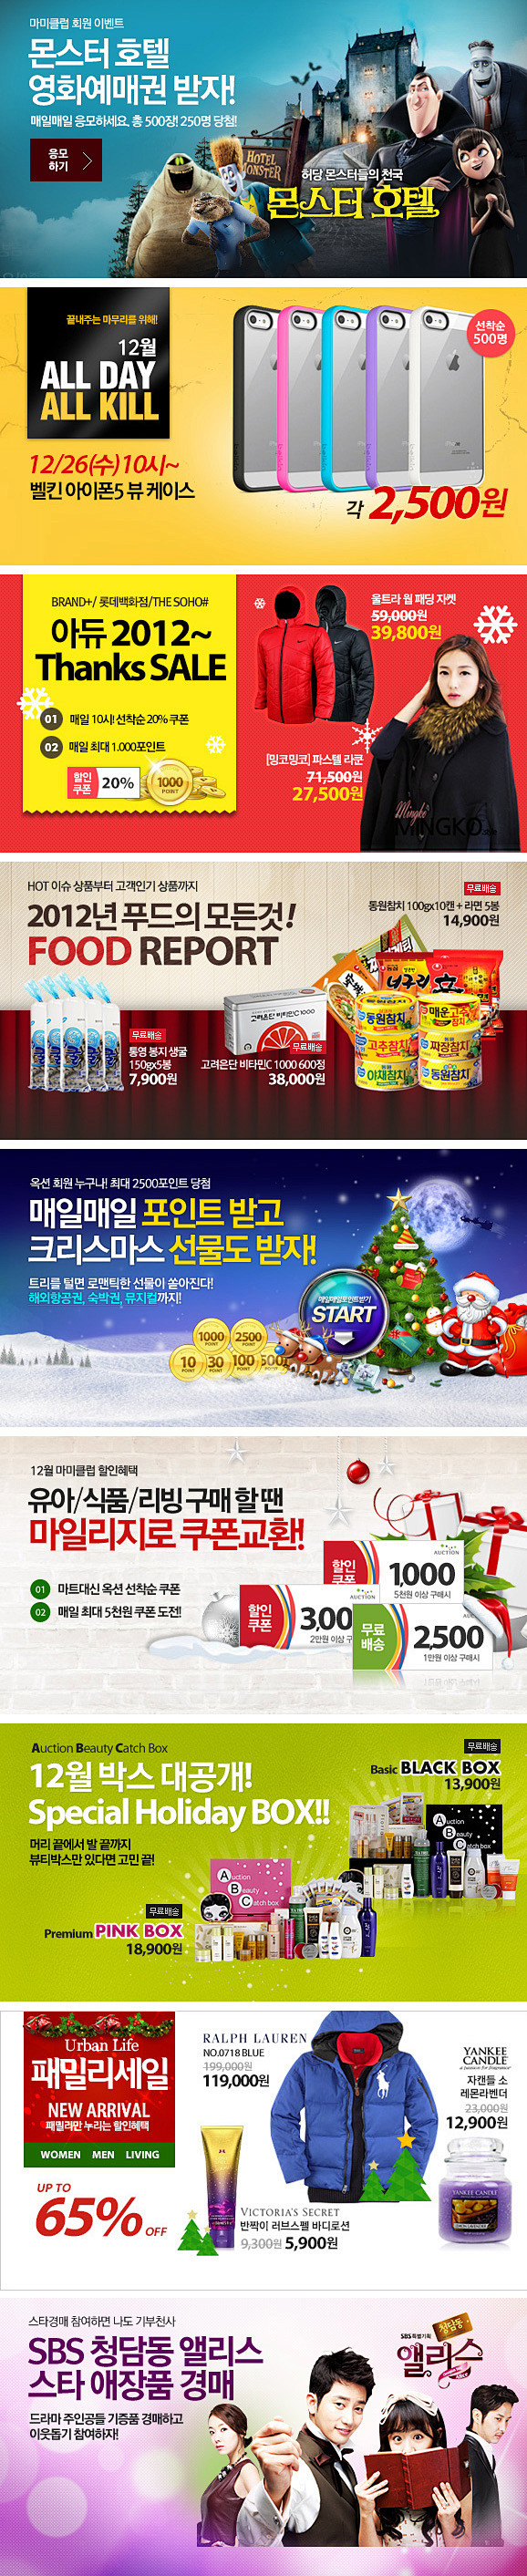 韩国购物网站促销广告banner设计欣赏...